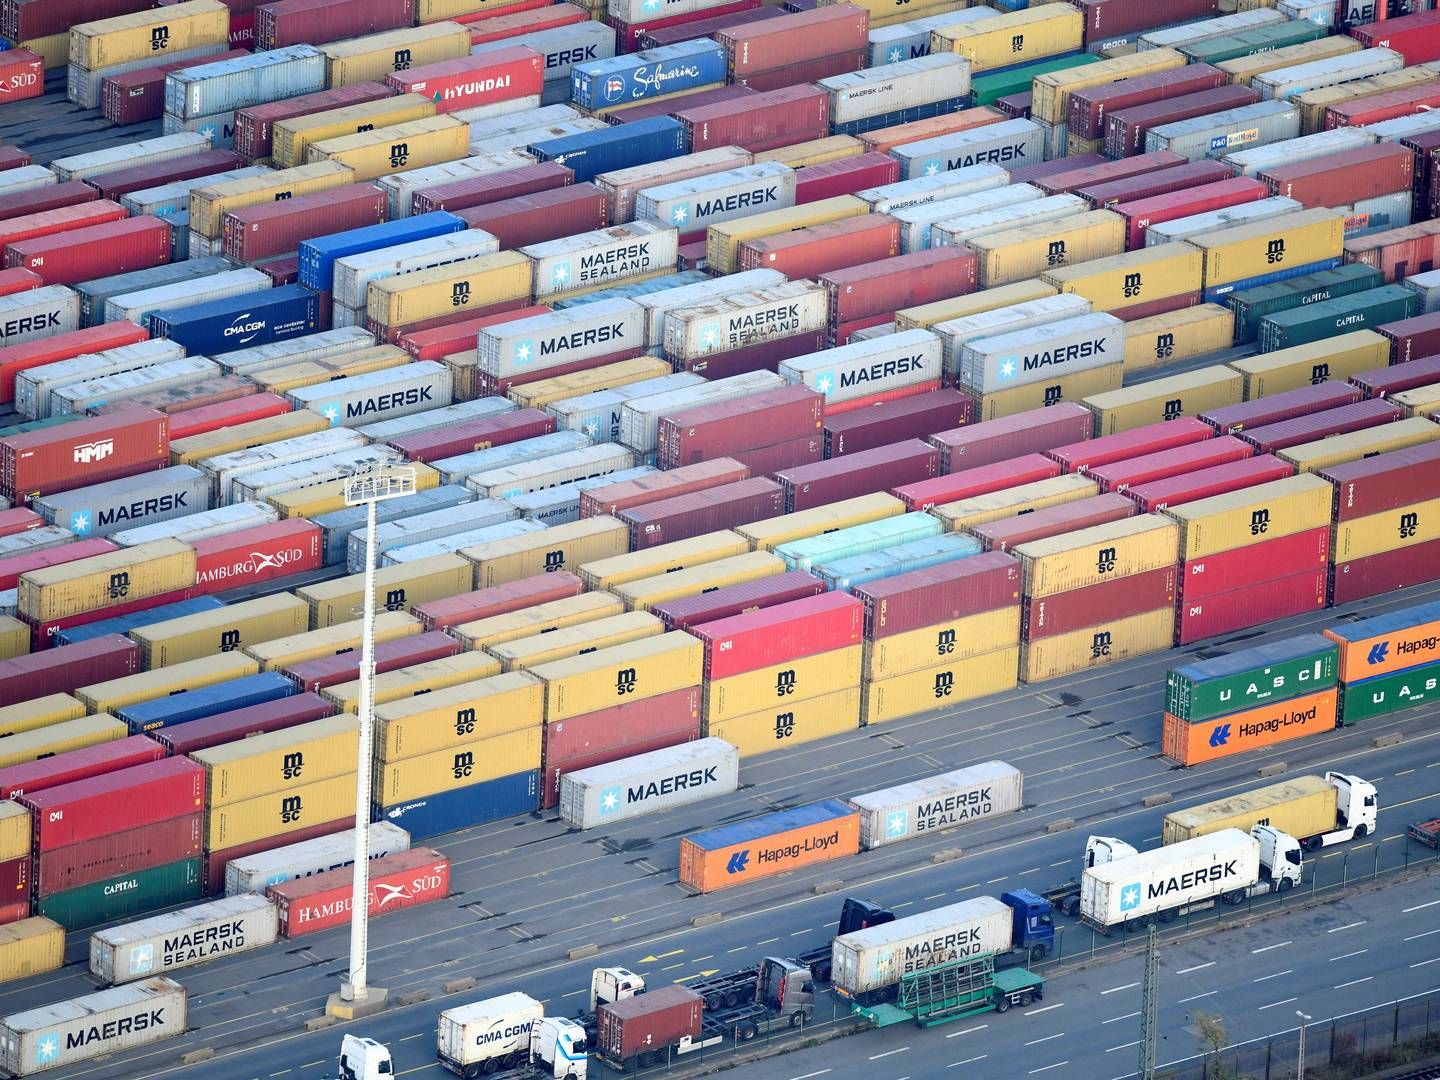 Containere bliver i stigende grad brugt til at indsmugle store mængder kokain via Europas storhavne. | Foto: Fabian Bimmer/Reuters/Ritzau Scanpix